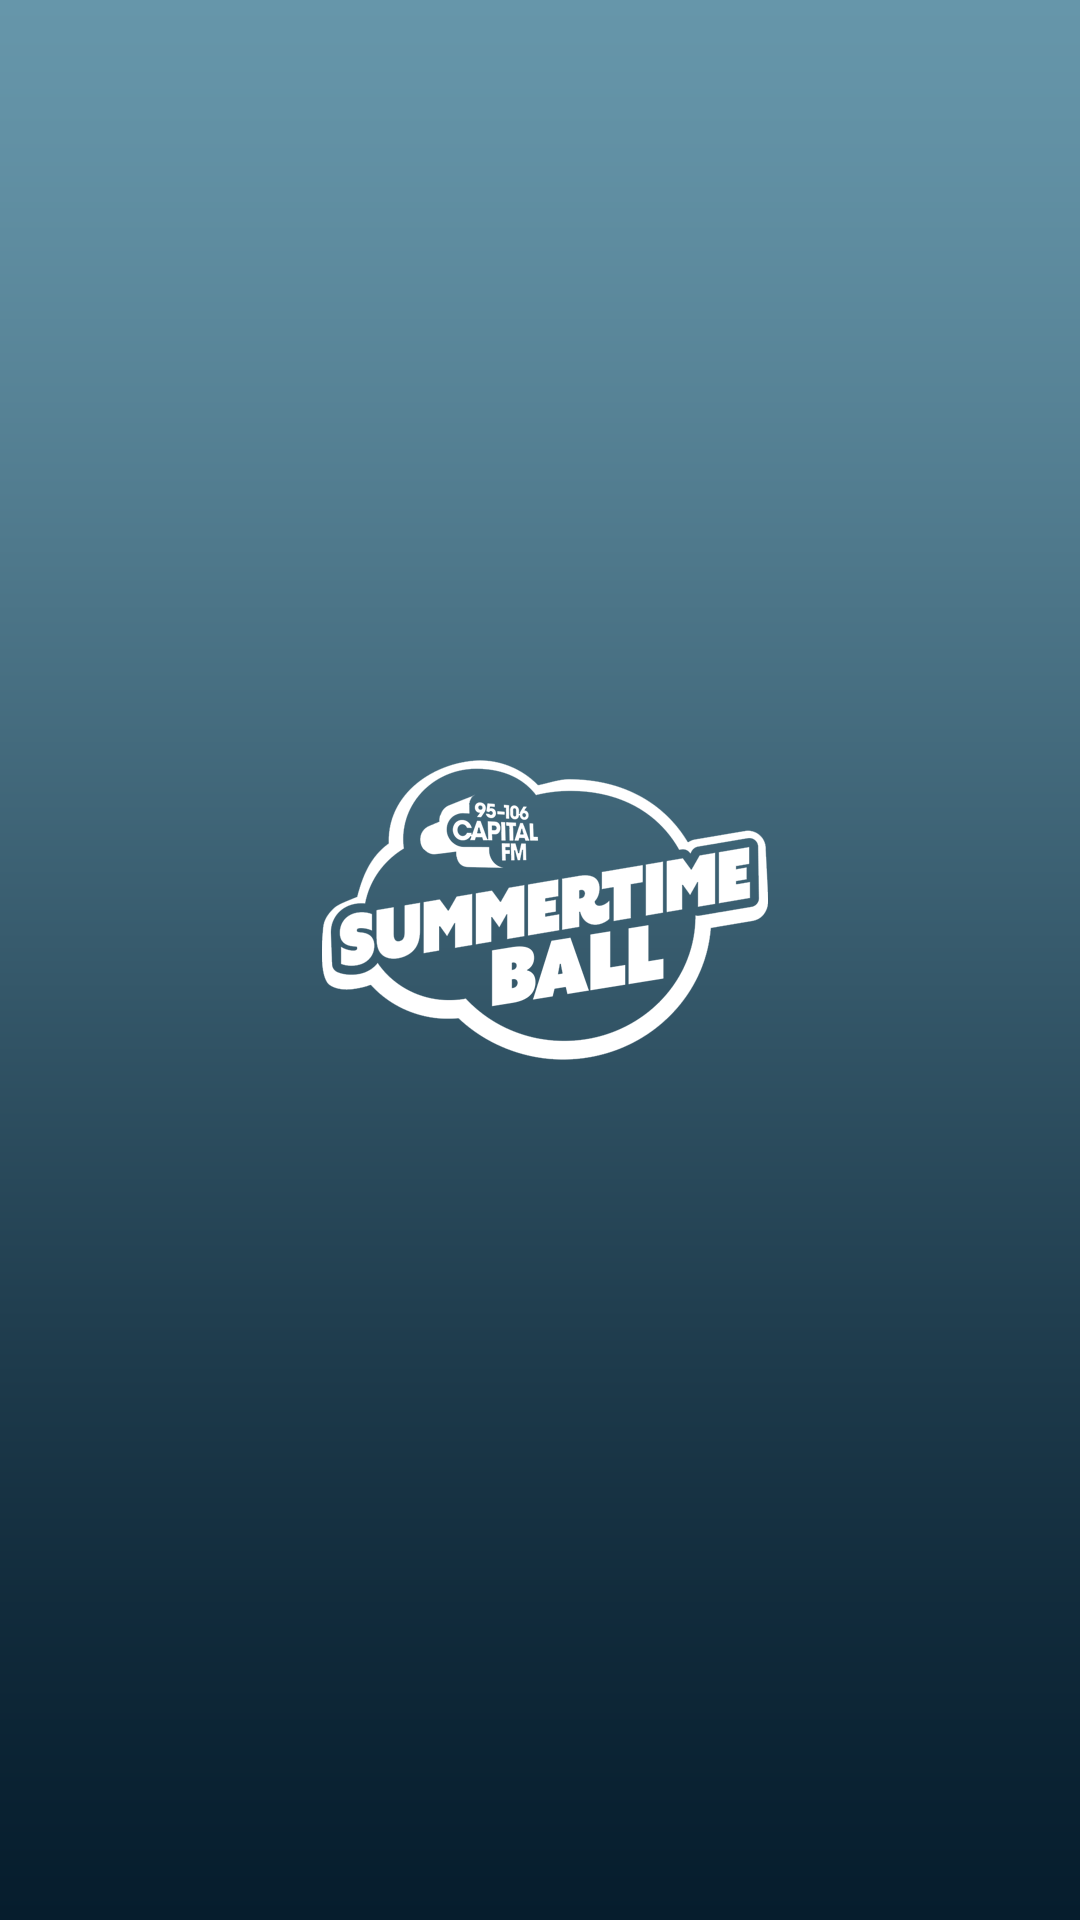 Summertime ball.png